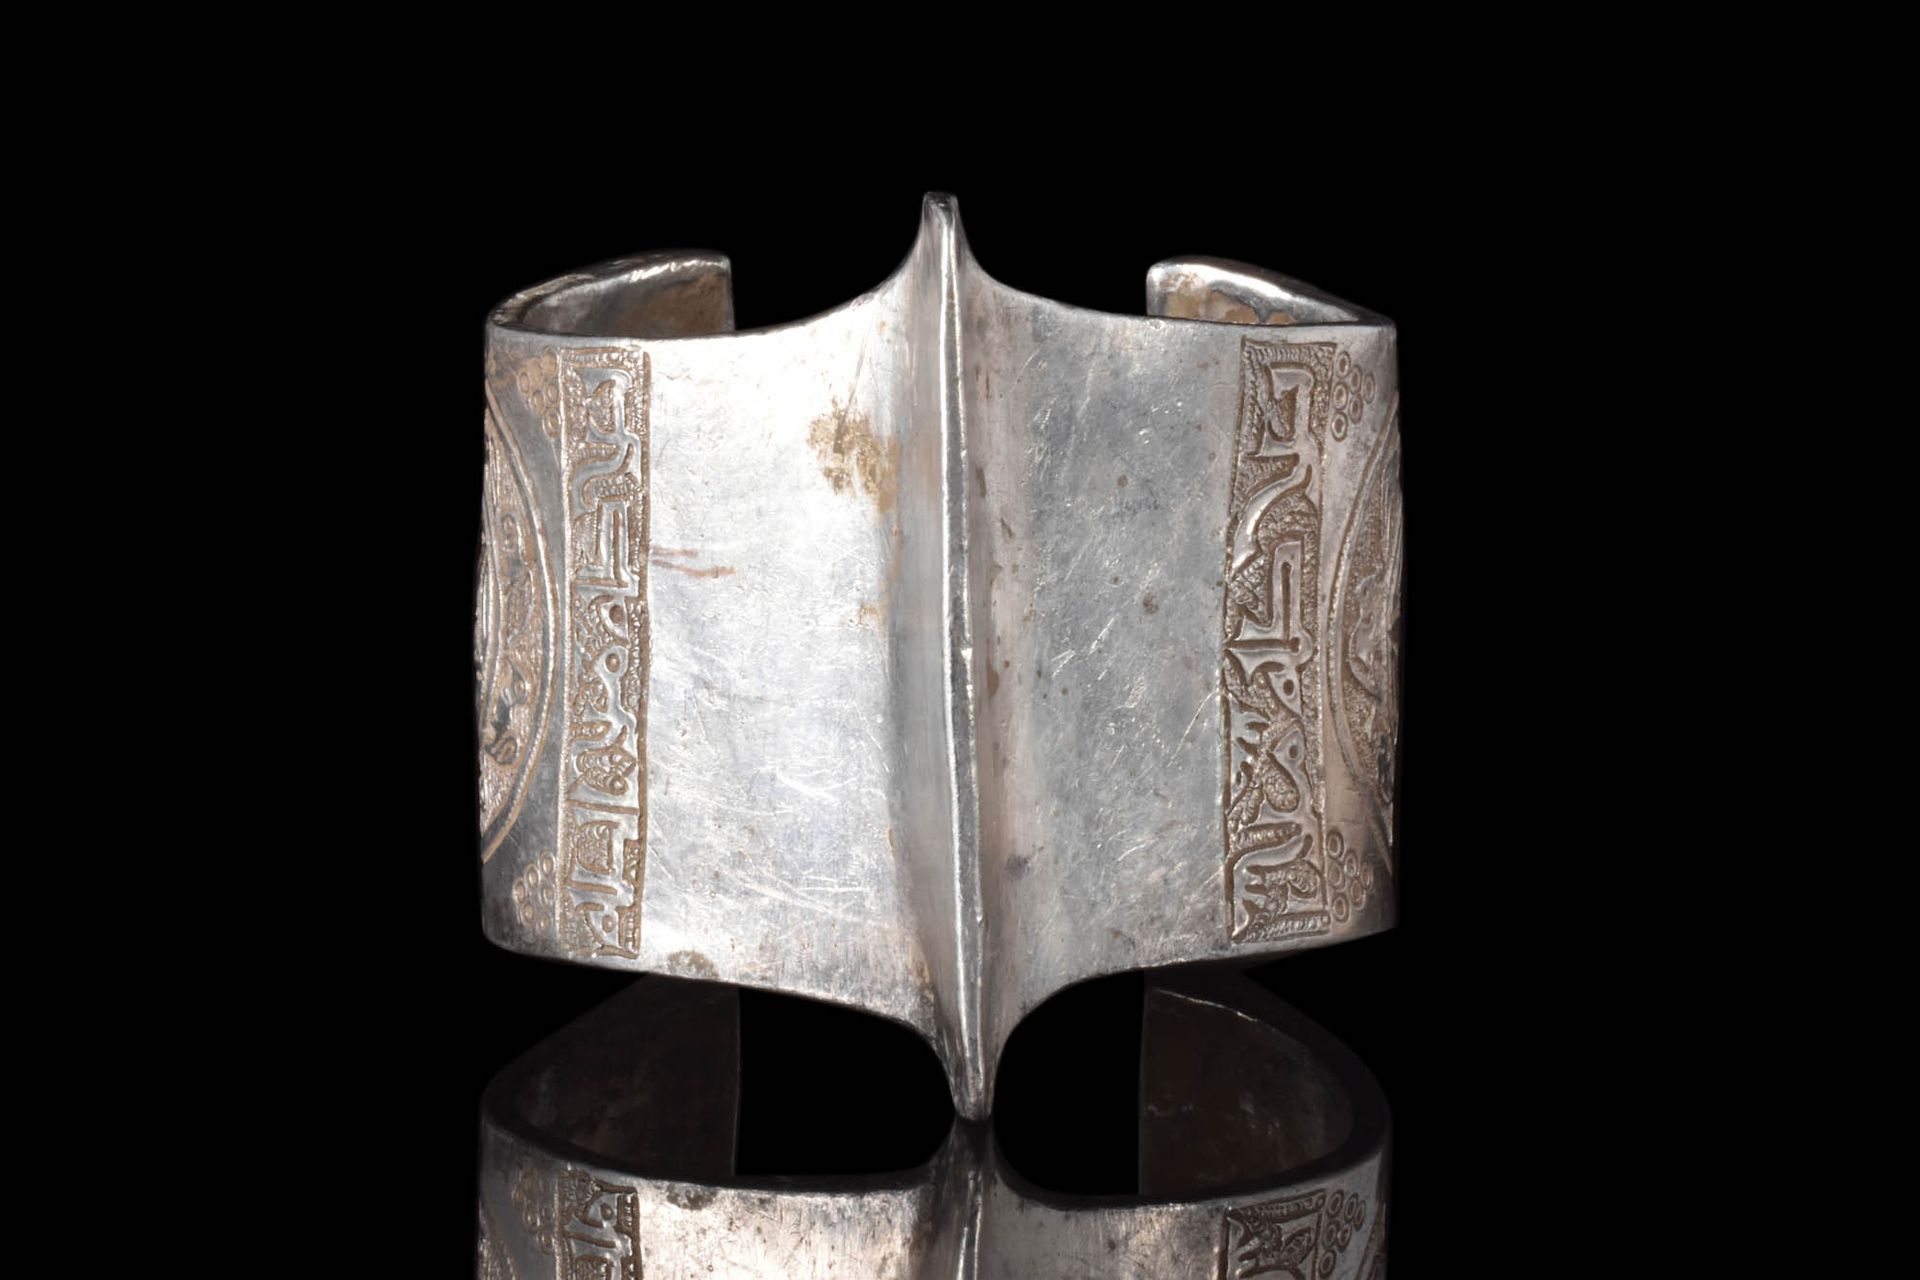 HEAVY SELJUK SILVER BRACELET Ca. AD 1100 - 1300.
An open-type bracelet featuring&hellip;